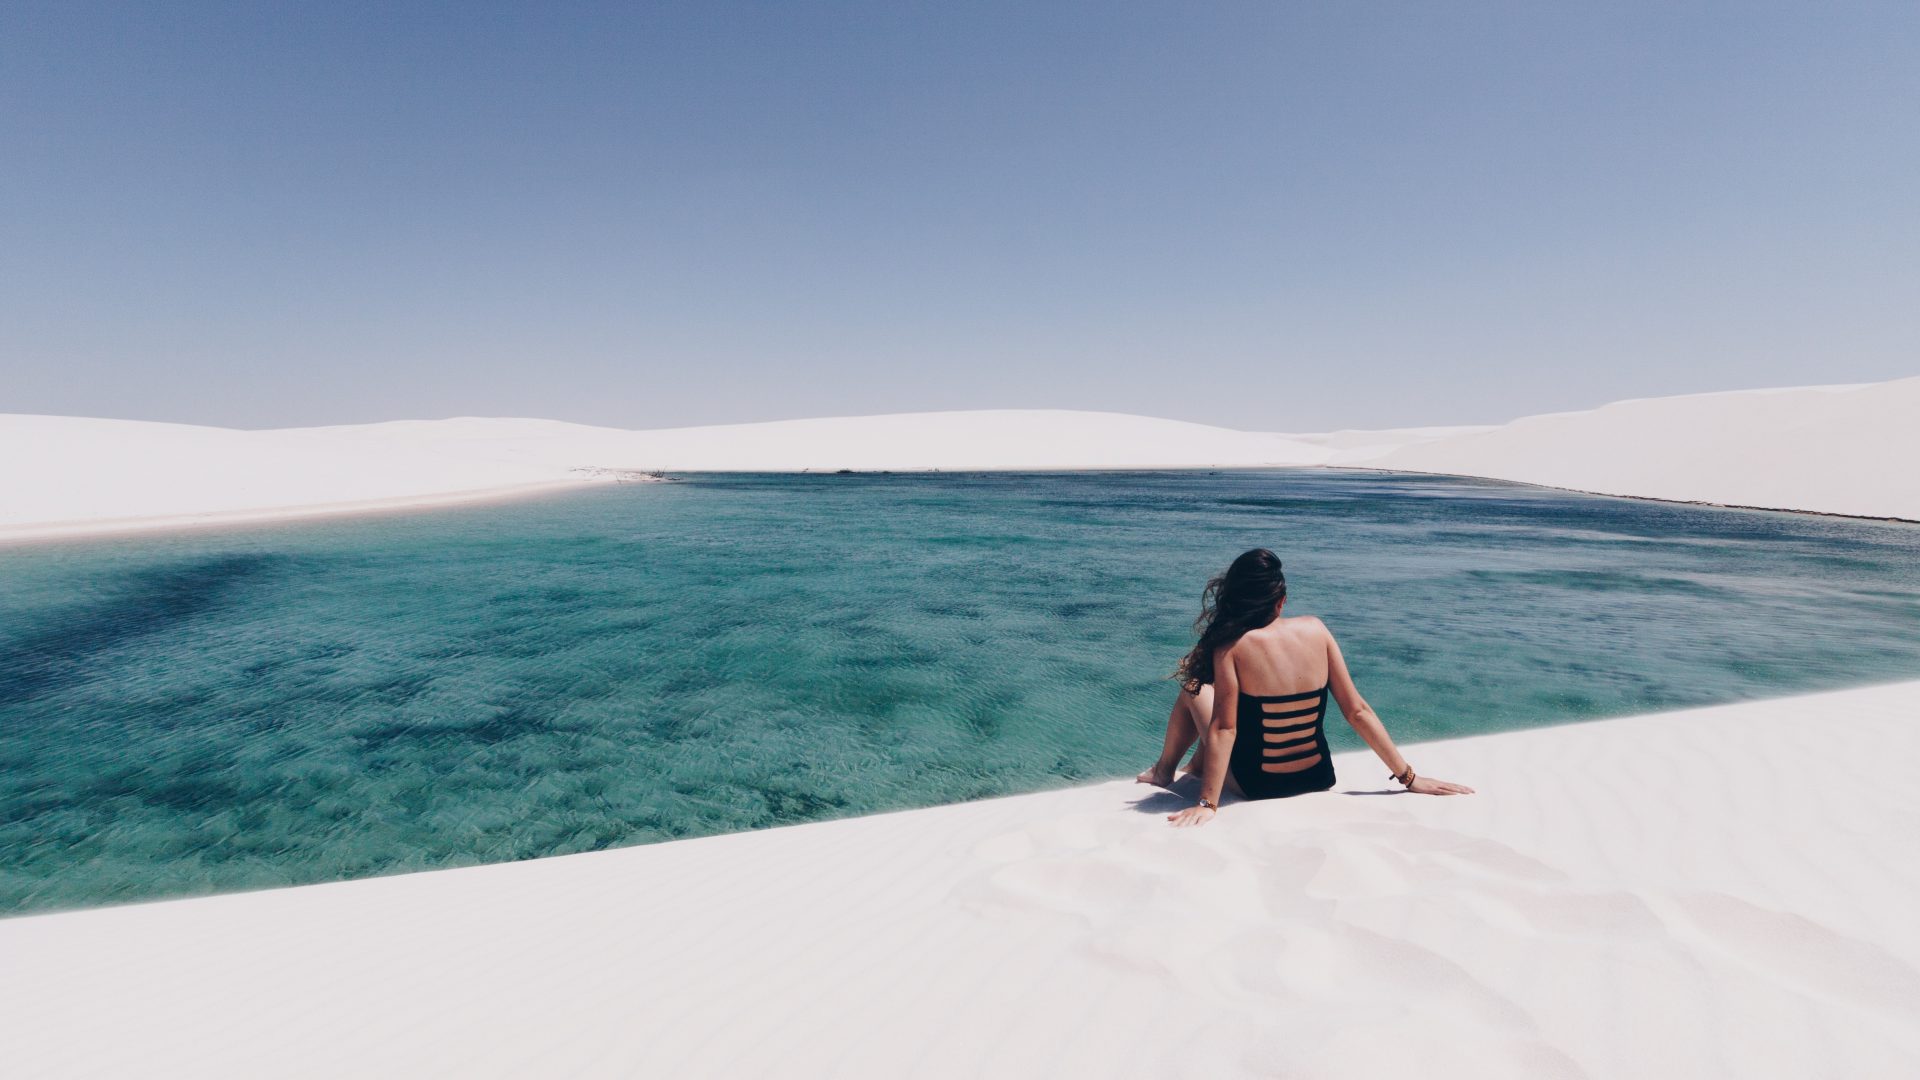 mujer sentada en la cima de una duna observando la laguna que se formó en el desierto.